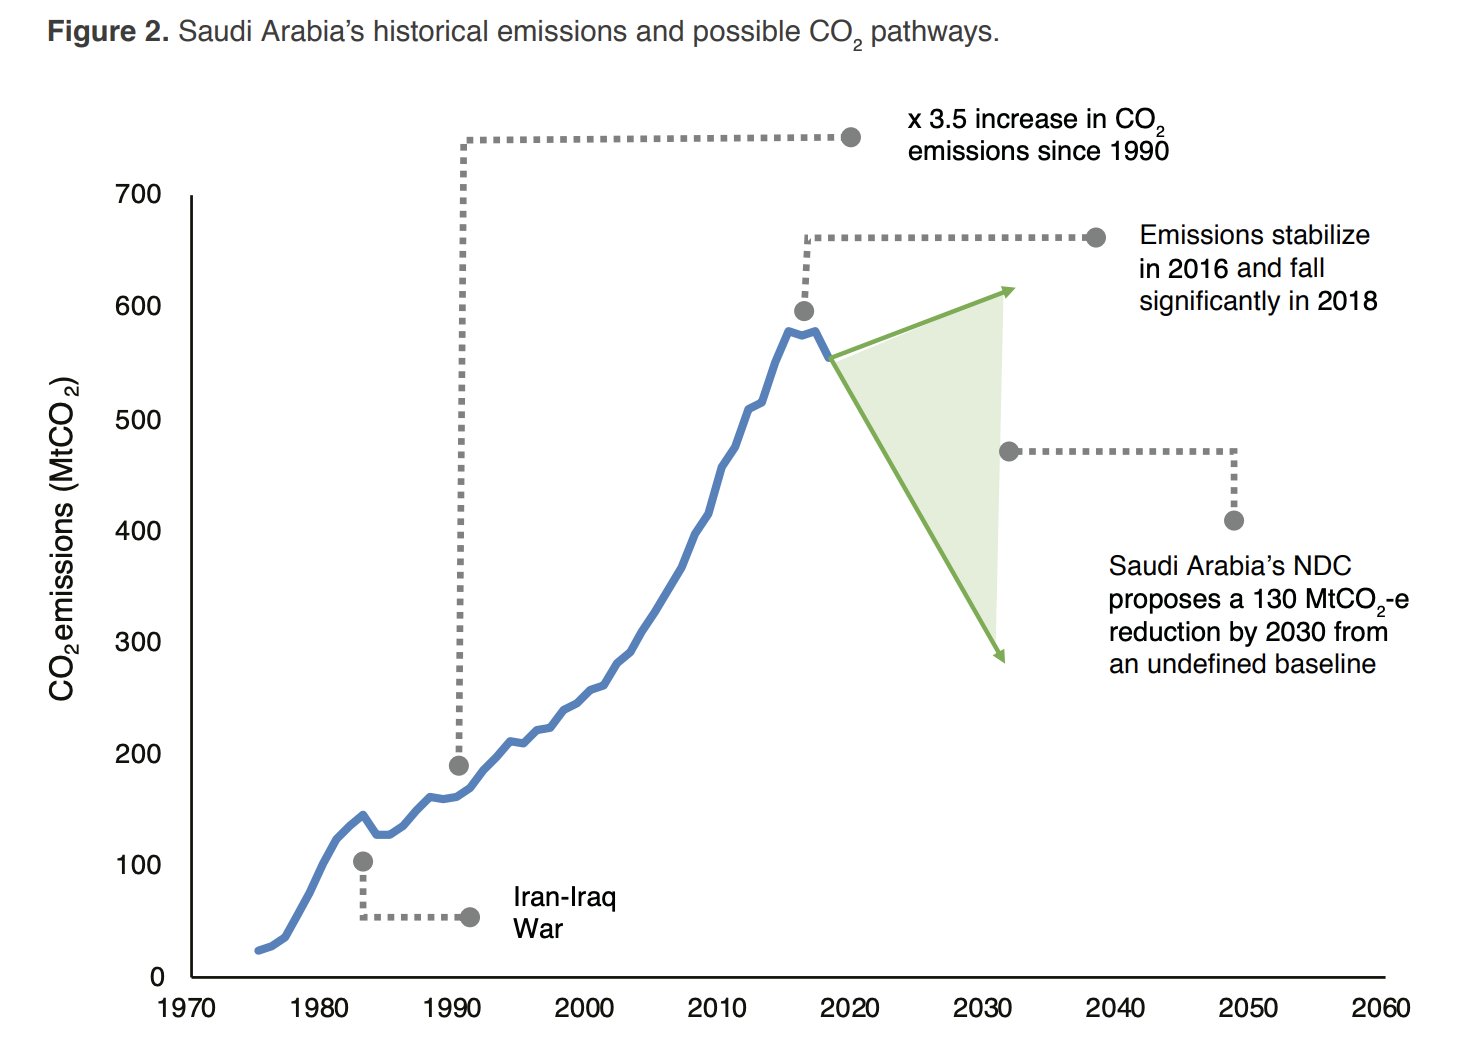 Source: KAPSARC analysis based on Enerdata Global Energy & CO2 Database (2018 data) and IEA (2017 and earlier). 